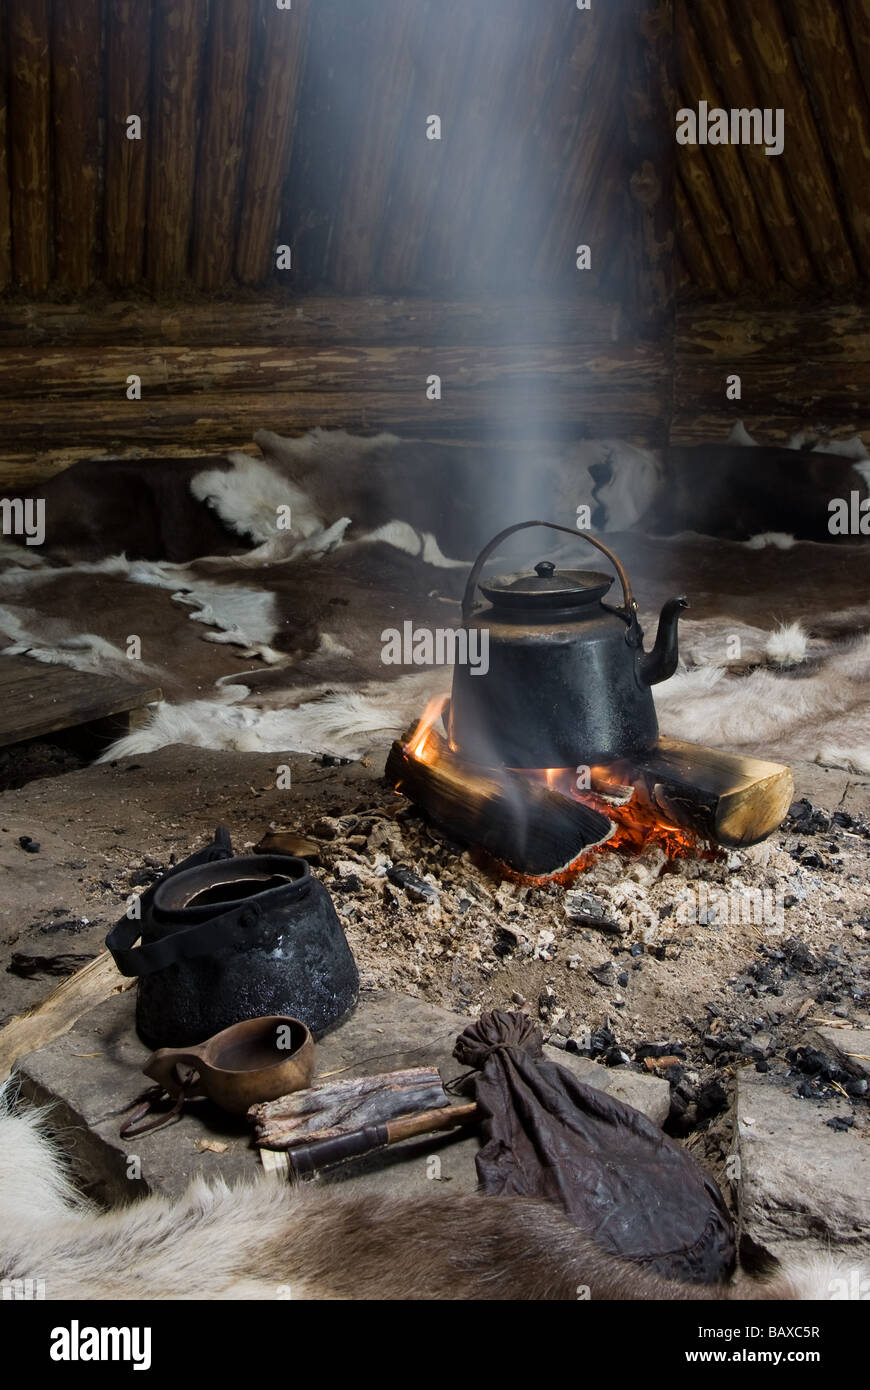 Façon traditionnelle de faire le café avec Sami, viande de renne dans un Gåhtie (Sami) maison traditionnelle en Båtsuoj Samecenter Gasa, Suède Banque D'Images